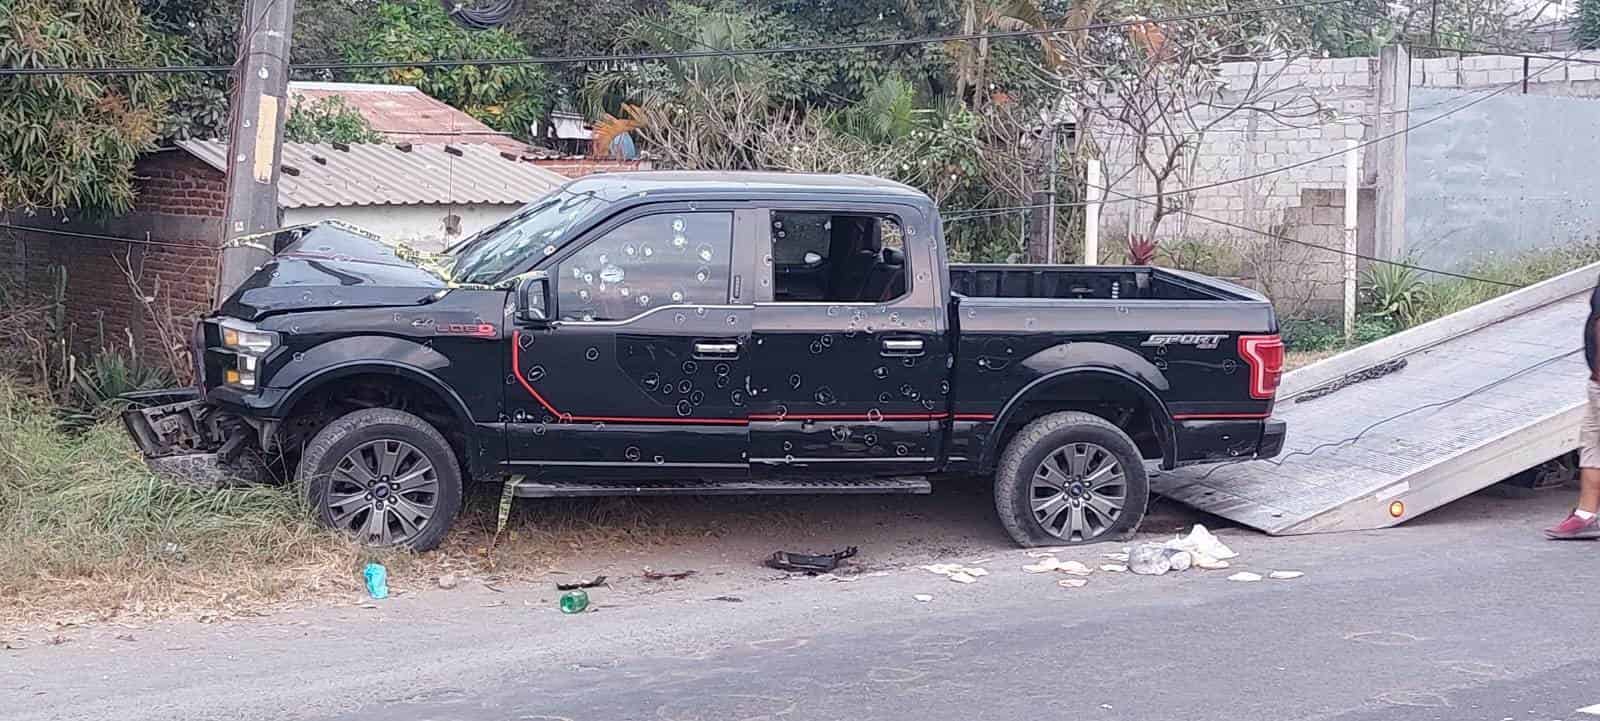 Detienen a 6 por masacre de Las Bajadas en Veracruz